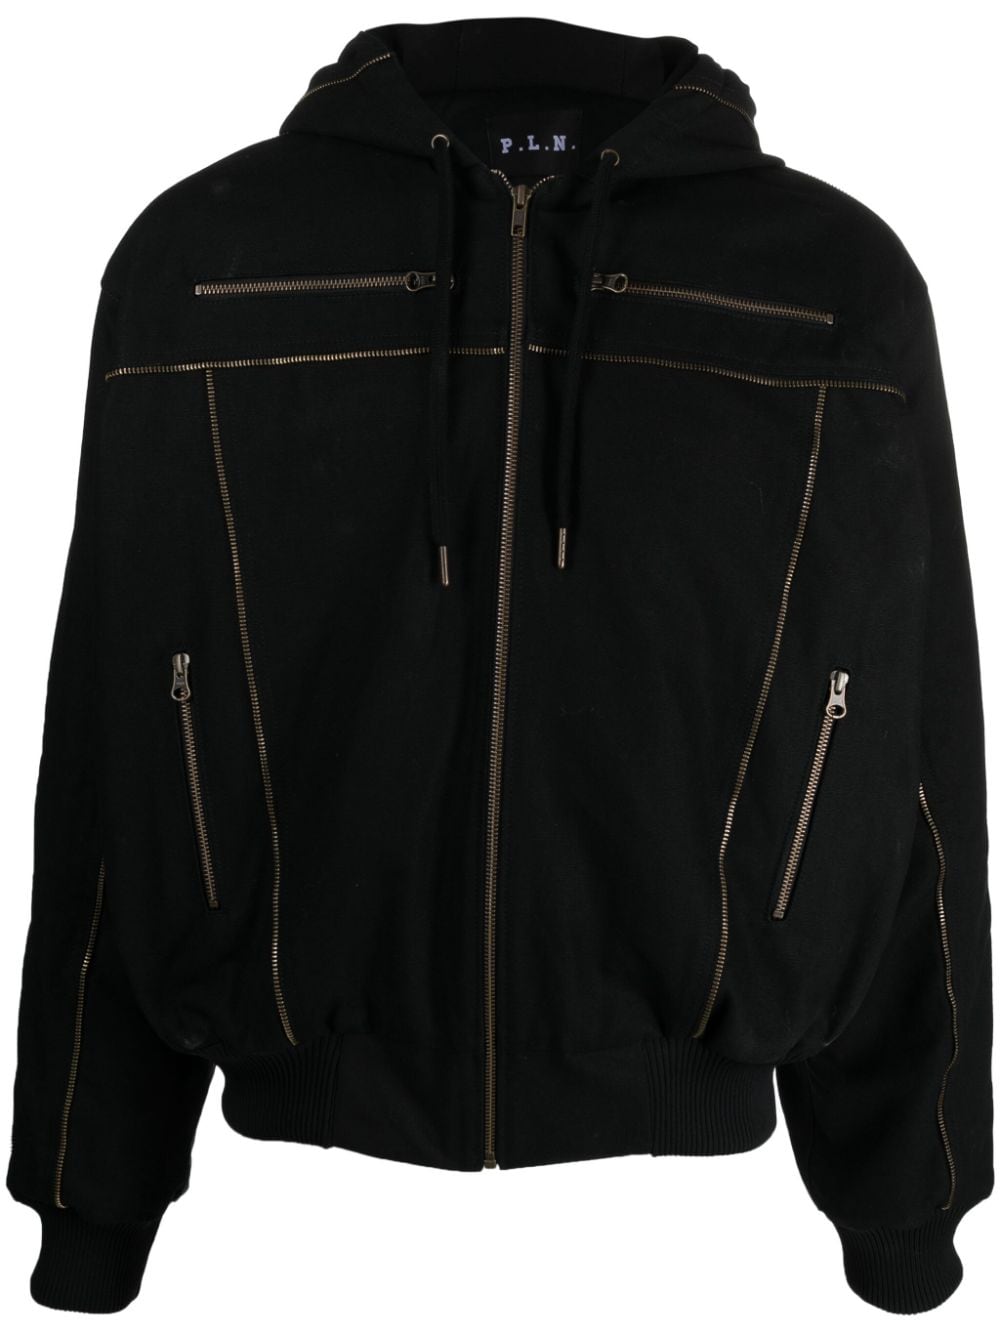 Unisex Plain Hooded Jacket cotton Jacket with Zipper